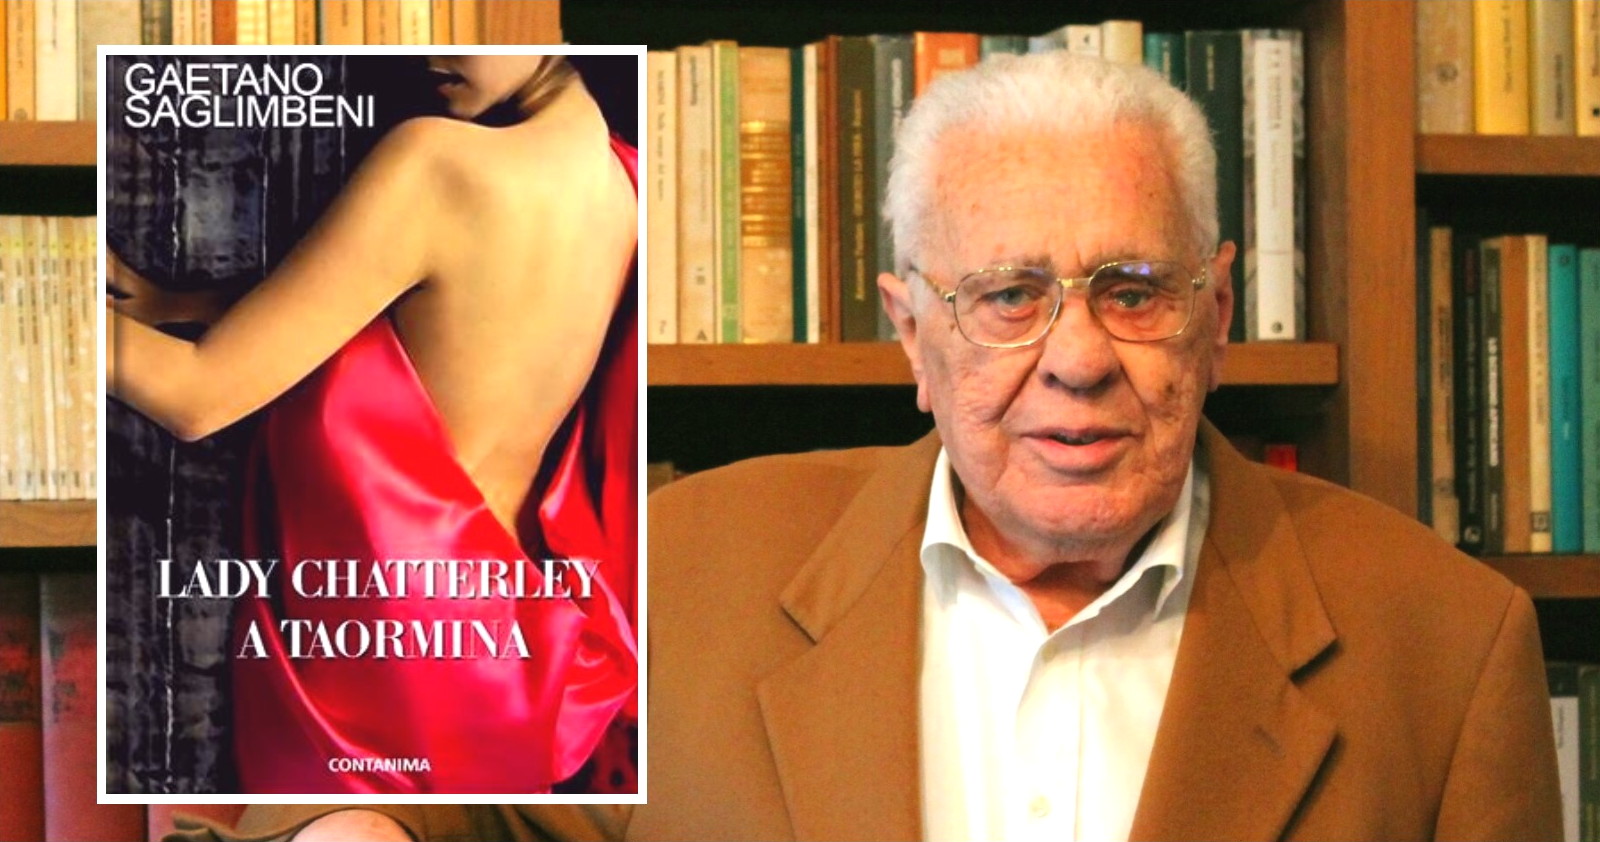 Le trasgressioni sessuali della baronessa Frieda con il giovane mulattiere di Taormina